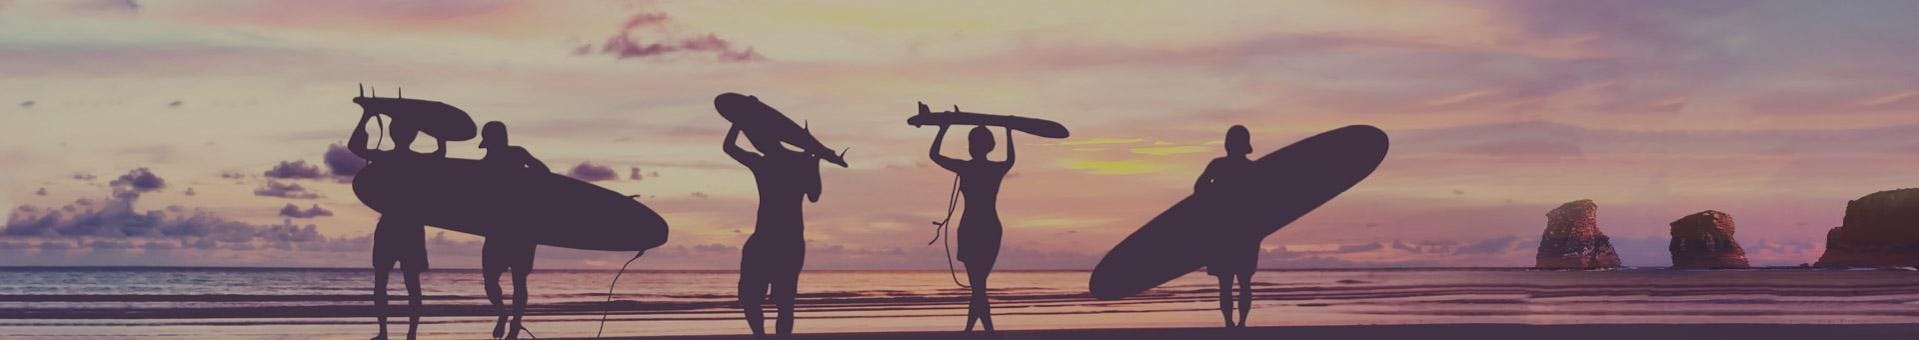 Clases de surf (desde 9 años) en playa Hendaya para principiantes.